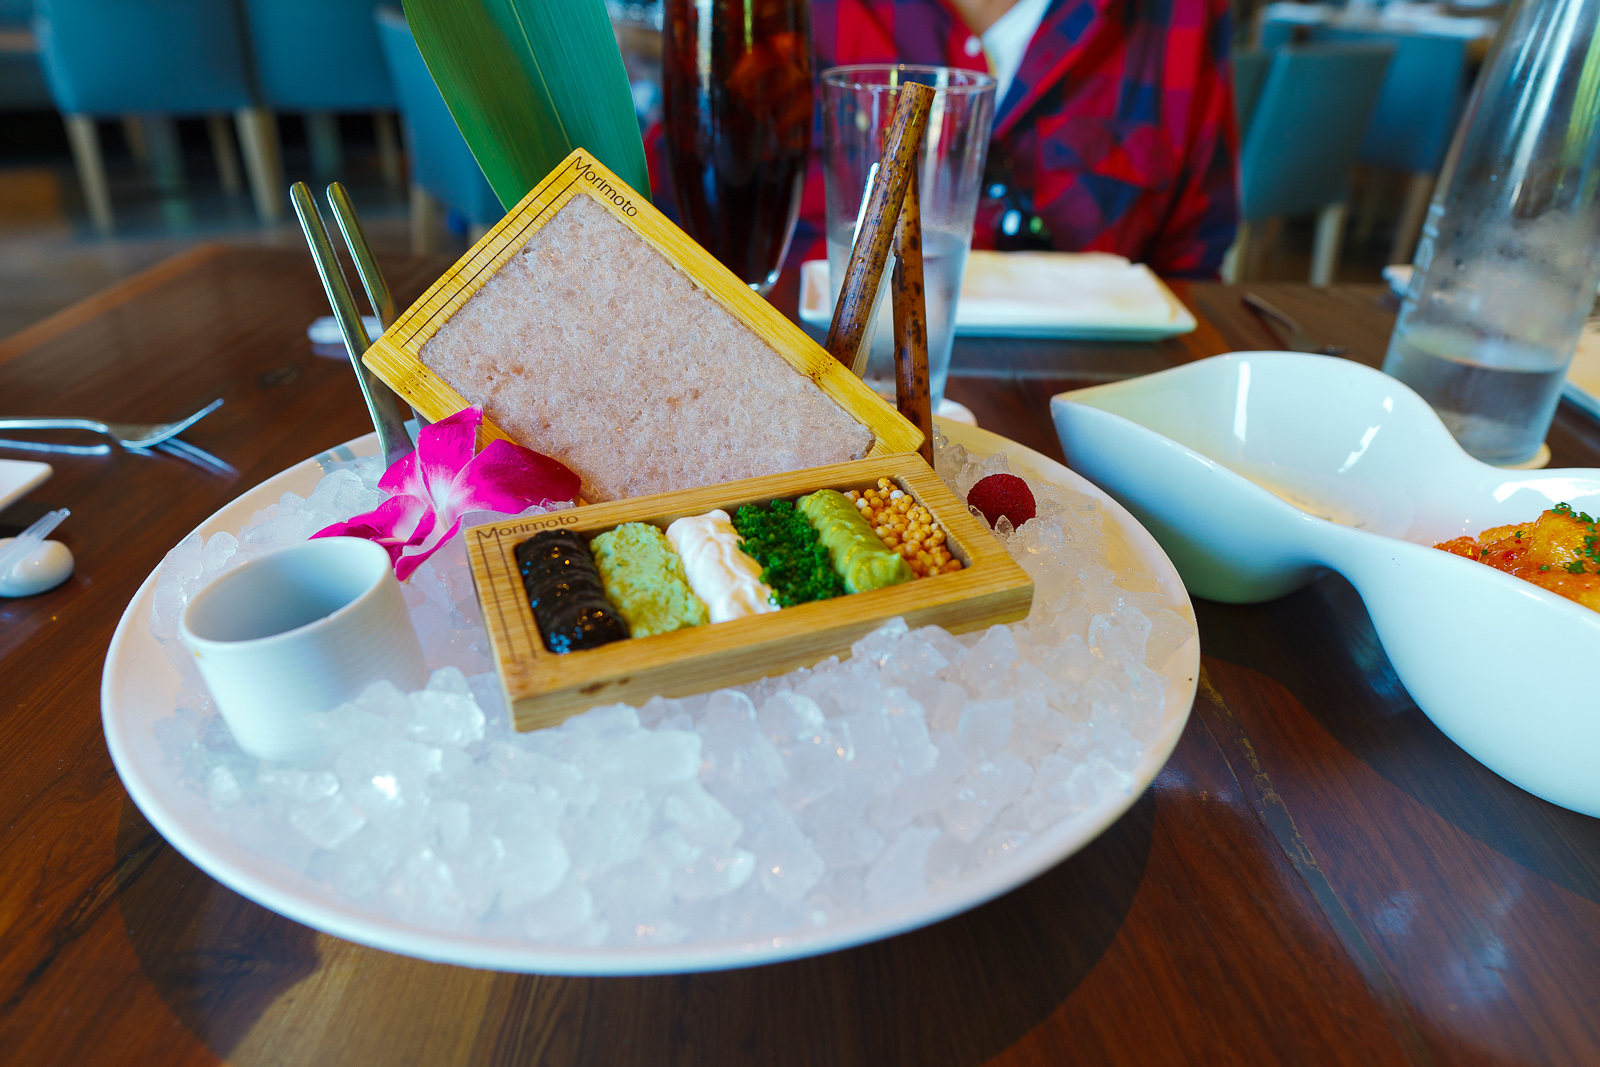 Hamachi tartare - wasabi, nori paste, sour cream ($23)